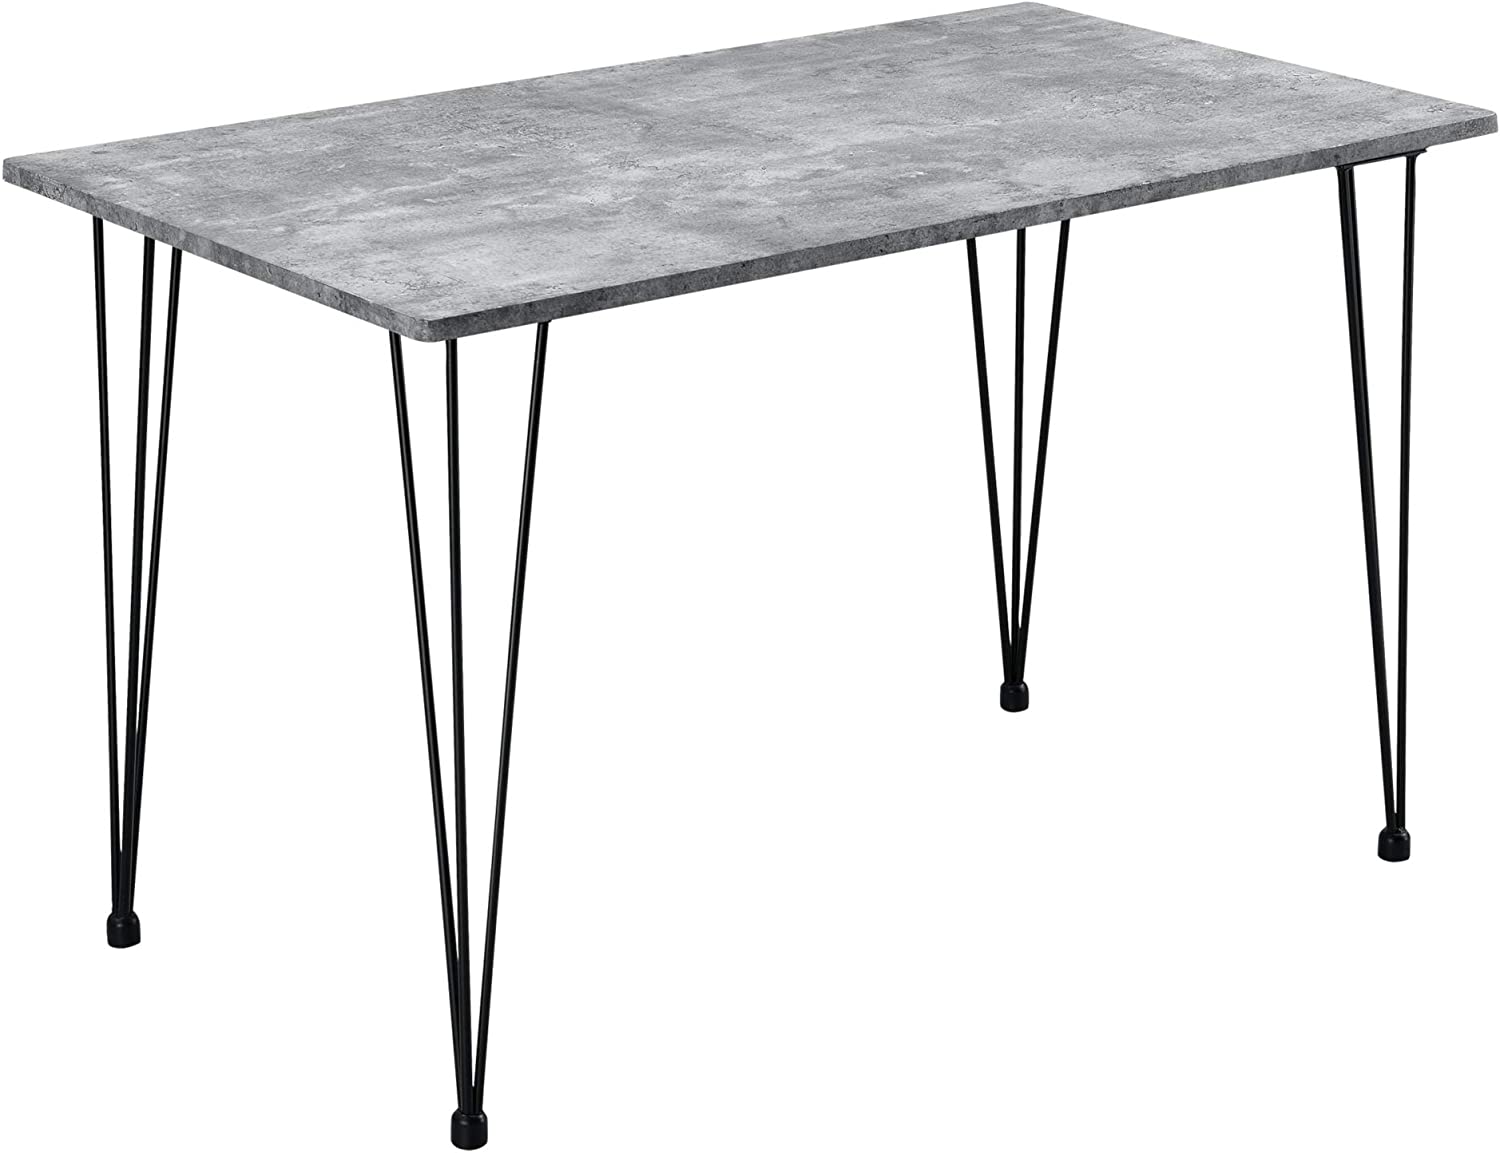 Table de salle à manger 4 personnes effet béton avec plateau en MDF noir, pieds en acier épingle, dim 120 x 70 x 75 cm